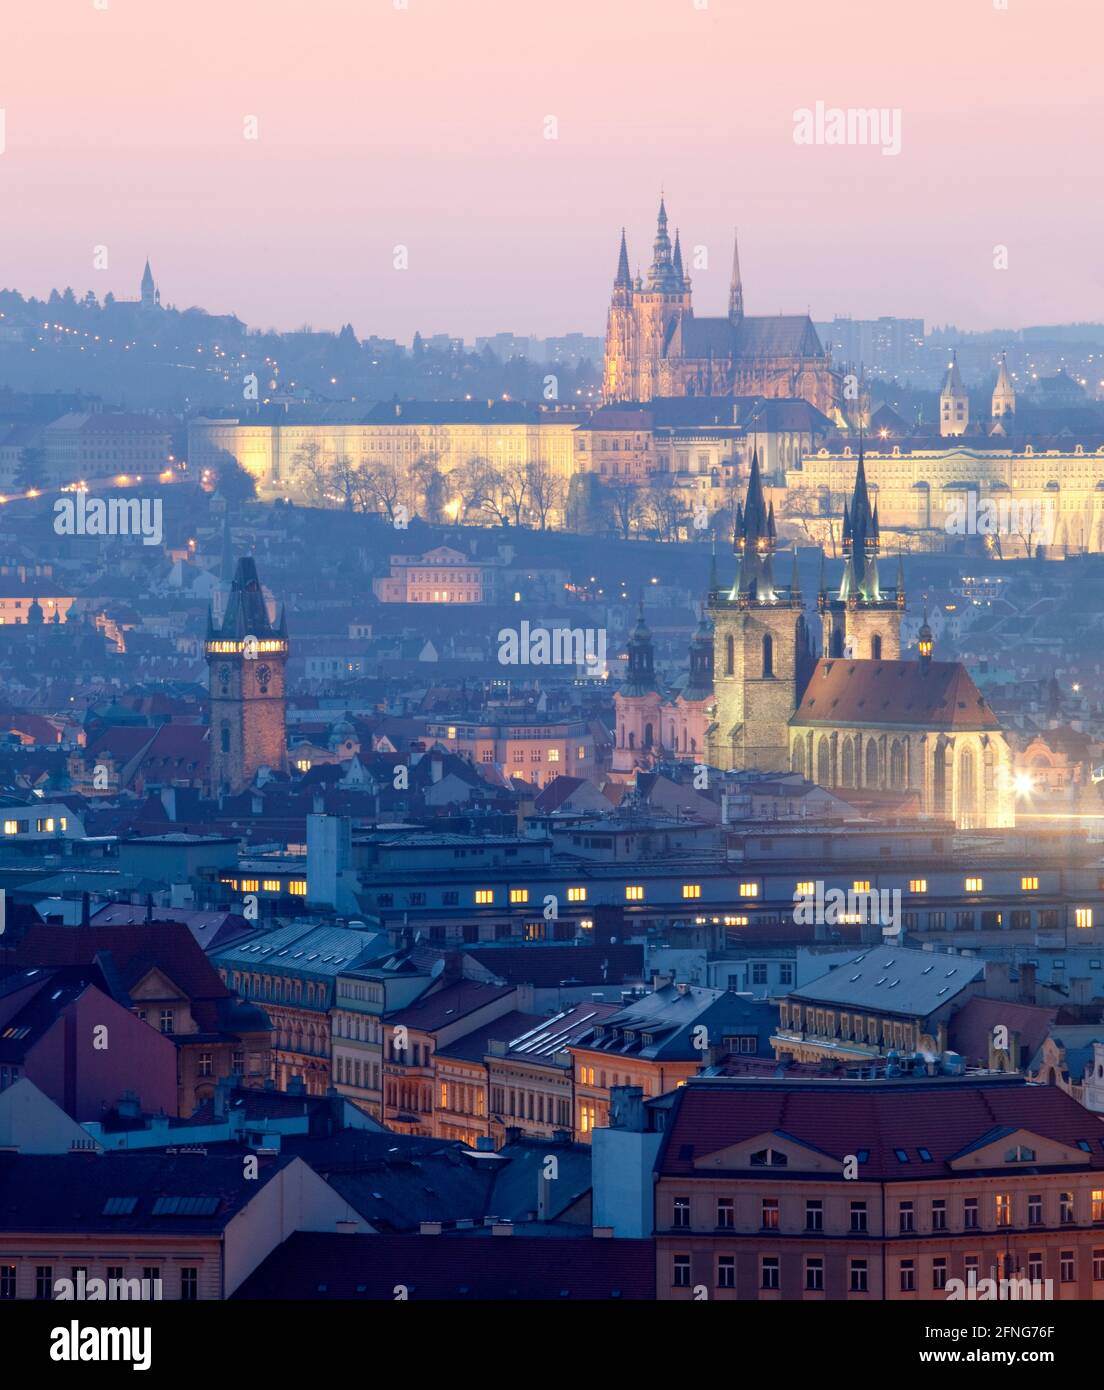 Praga, República Checa. Castillo Hradcany y agujas del casco antiguo al atardecer. Foto de stock